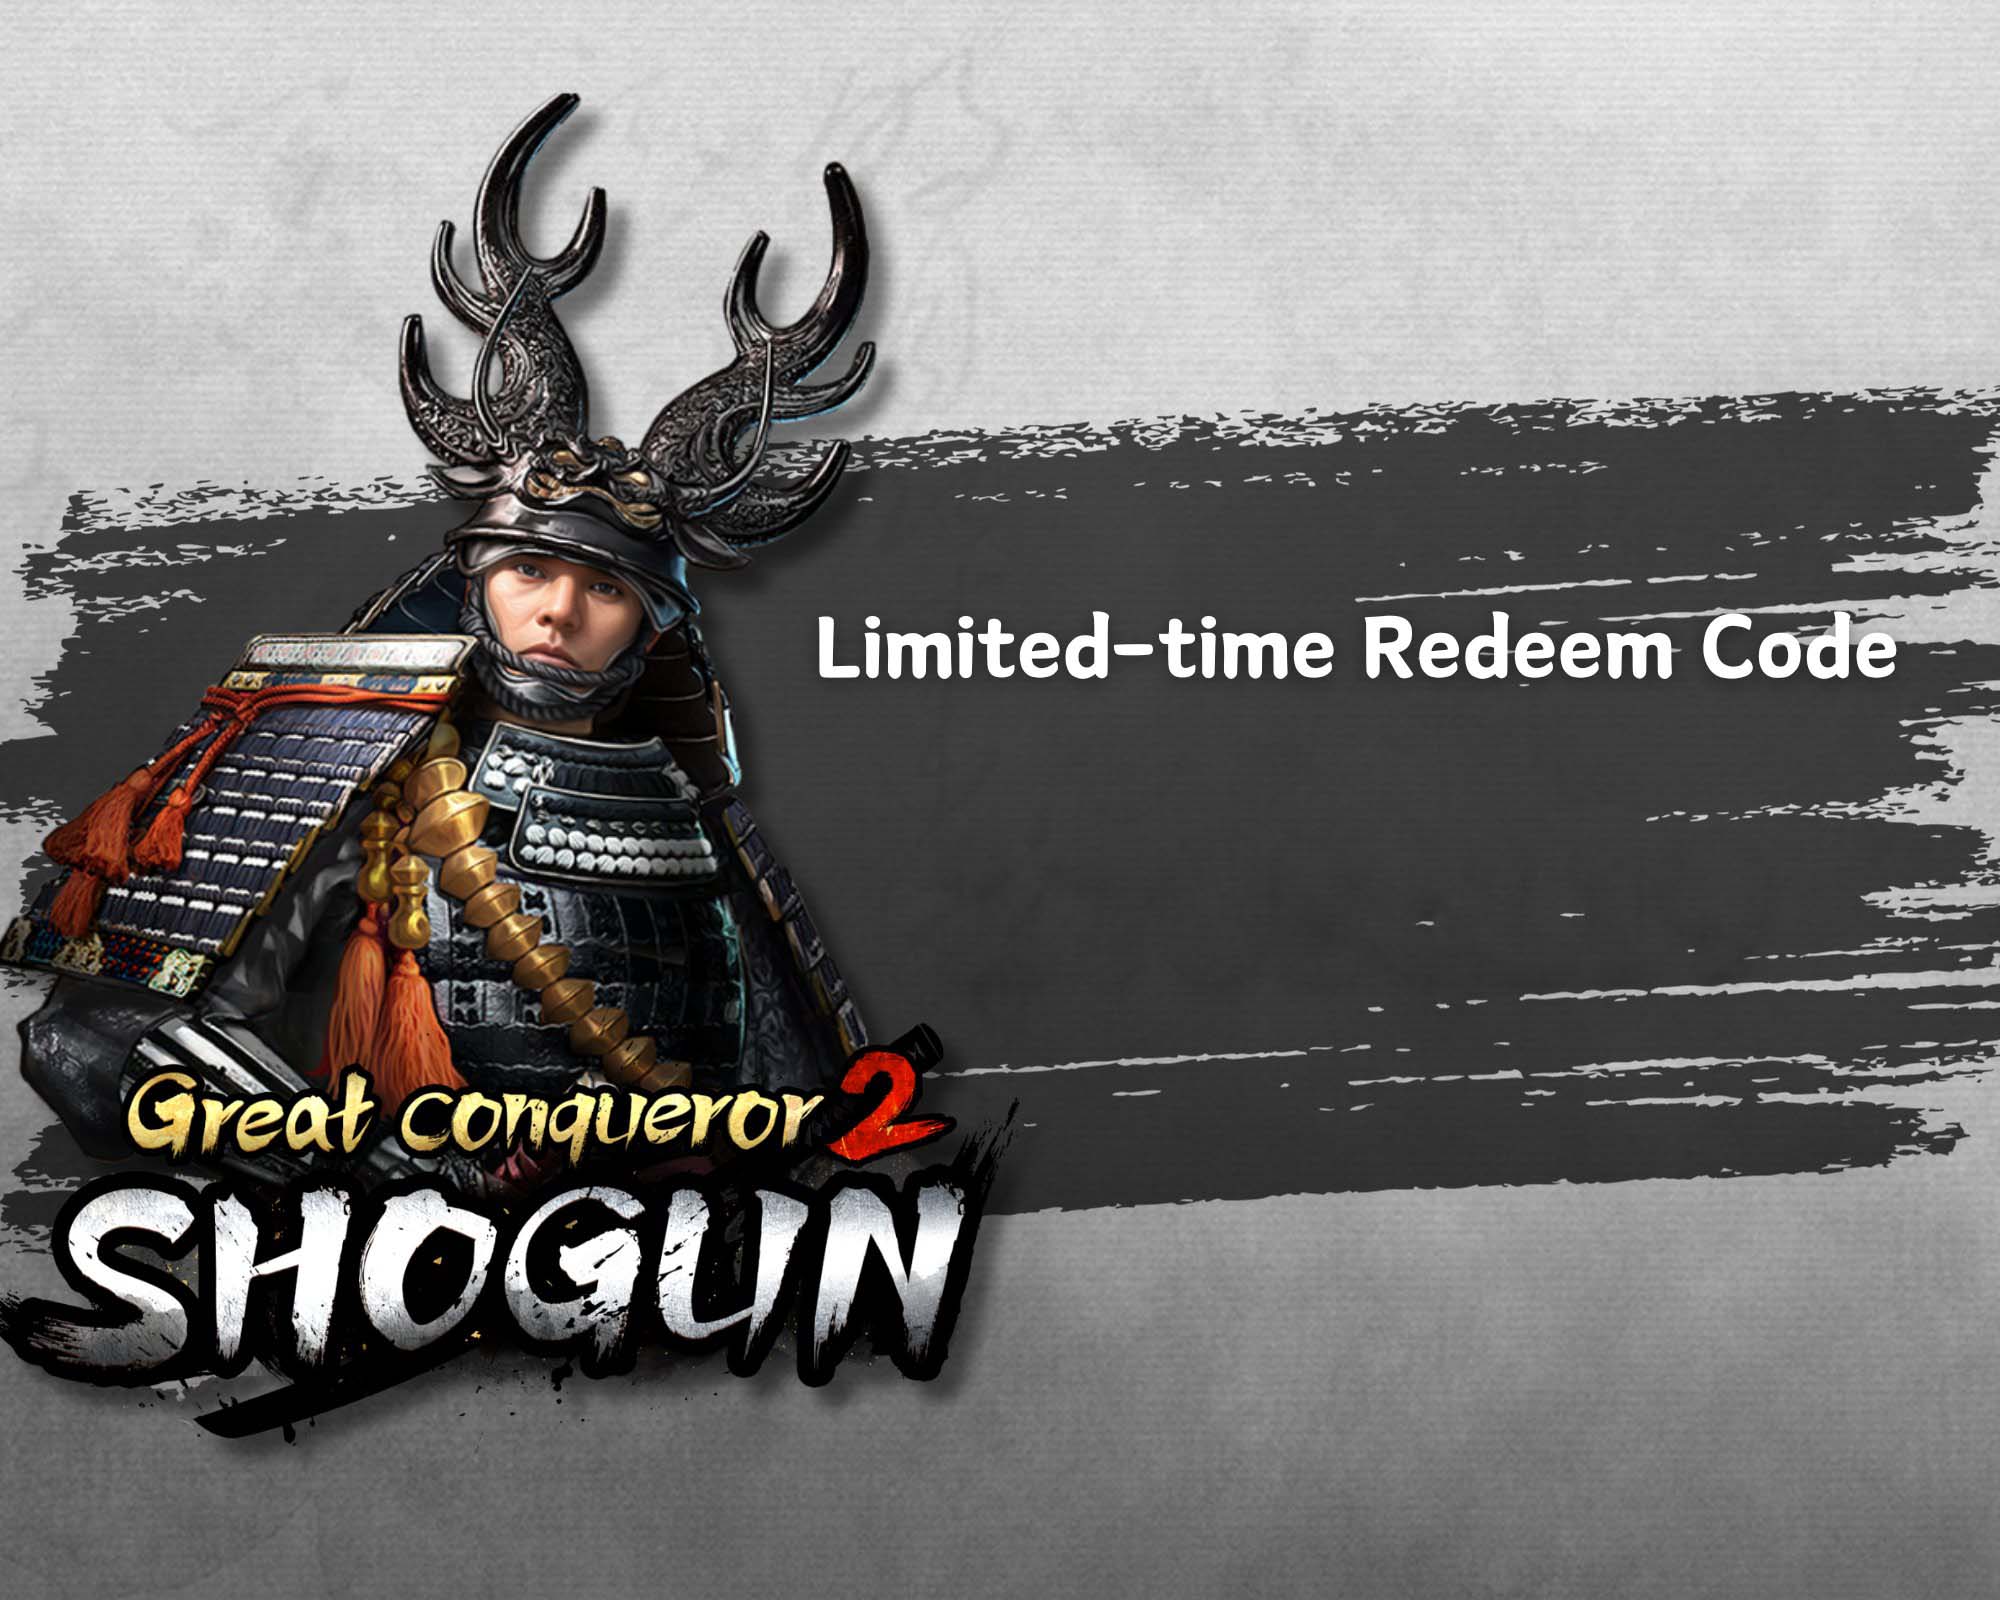 Great Conqueror 2 Shogun Redeem Code